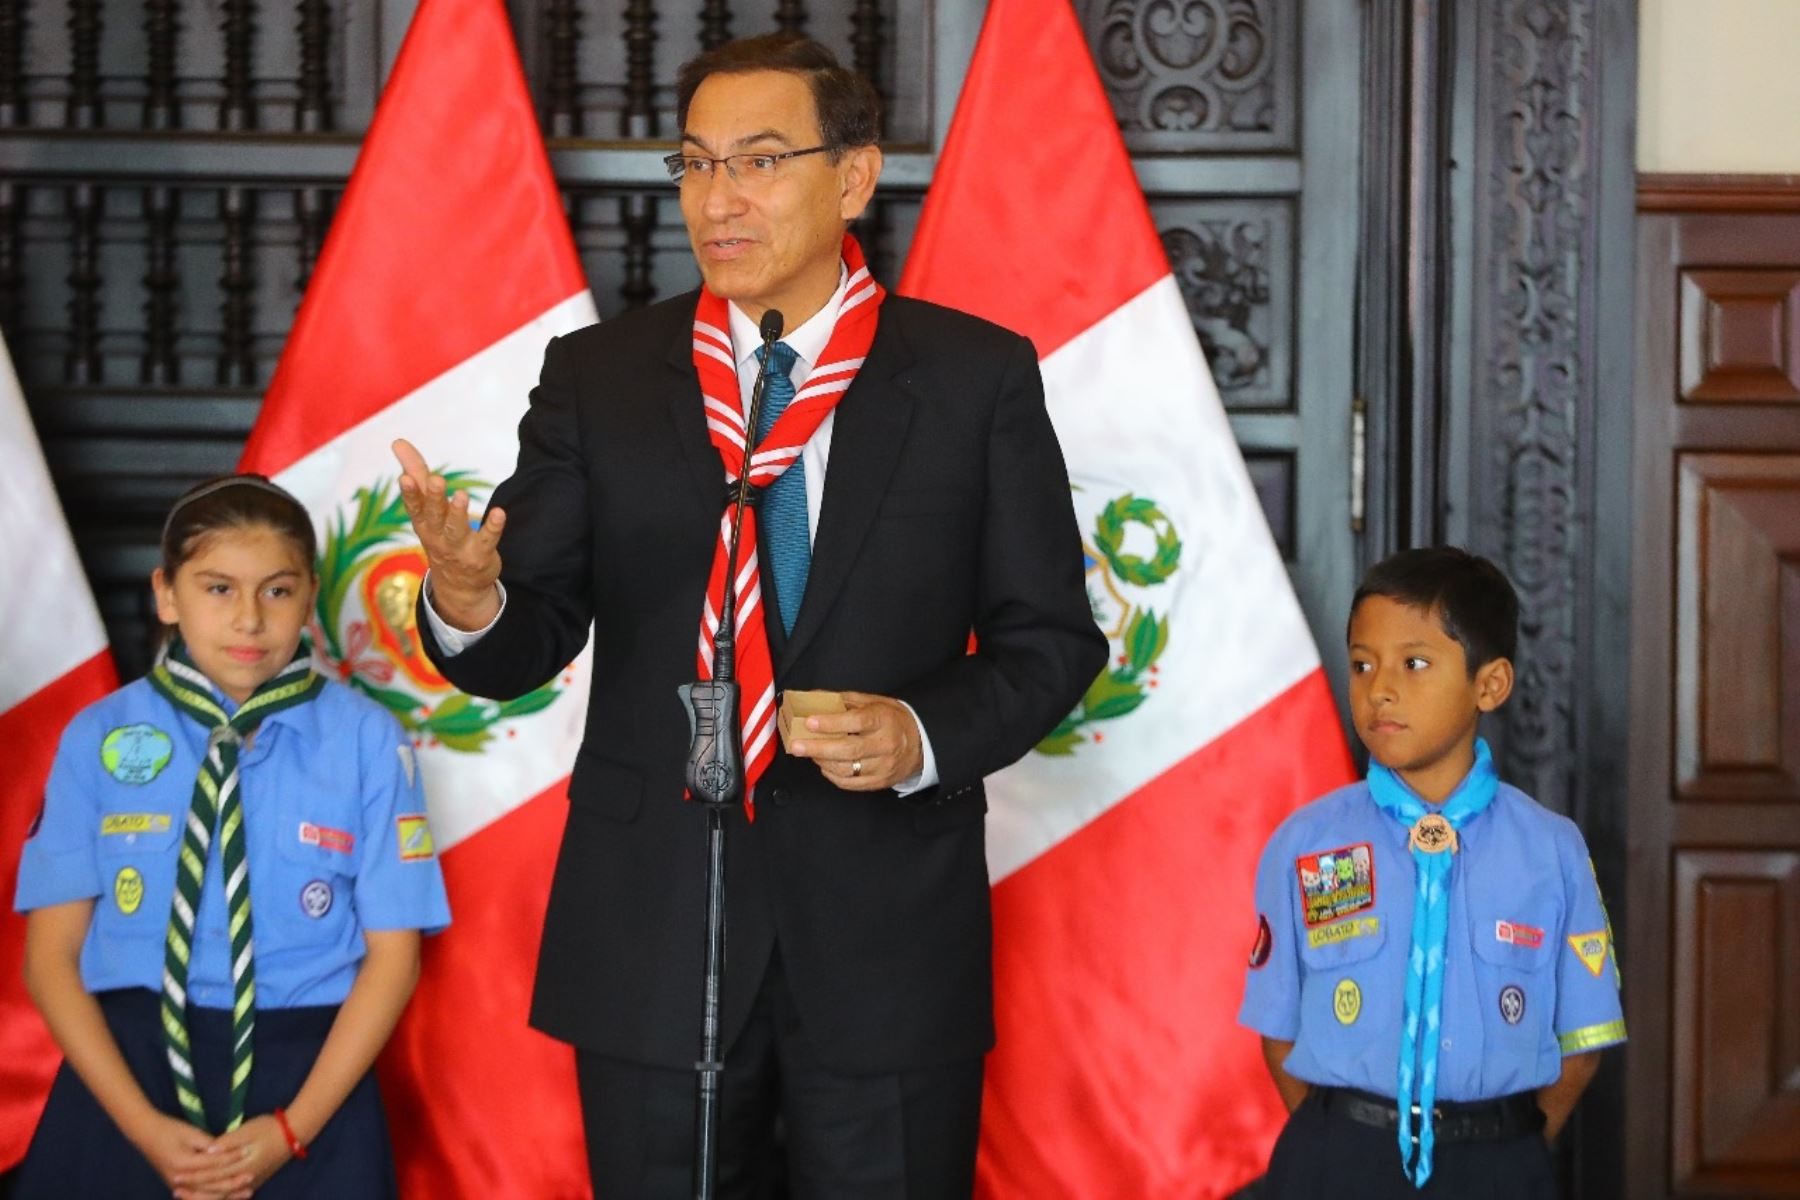 Jefe de Estado, Martín Vizcarra es designado presidente honorario de la Asociación Scouts del Perú.